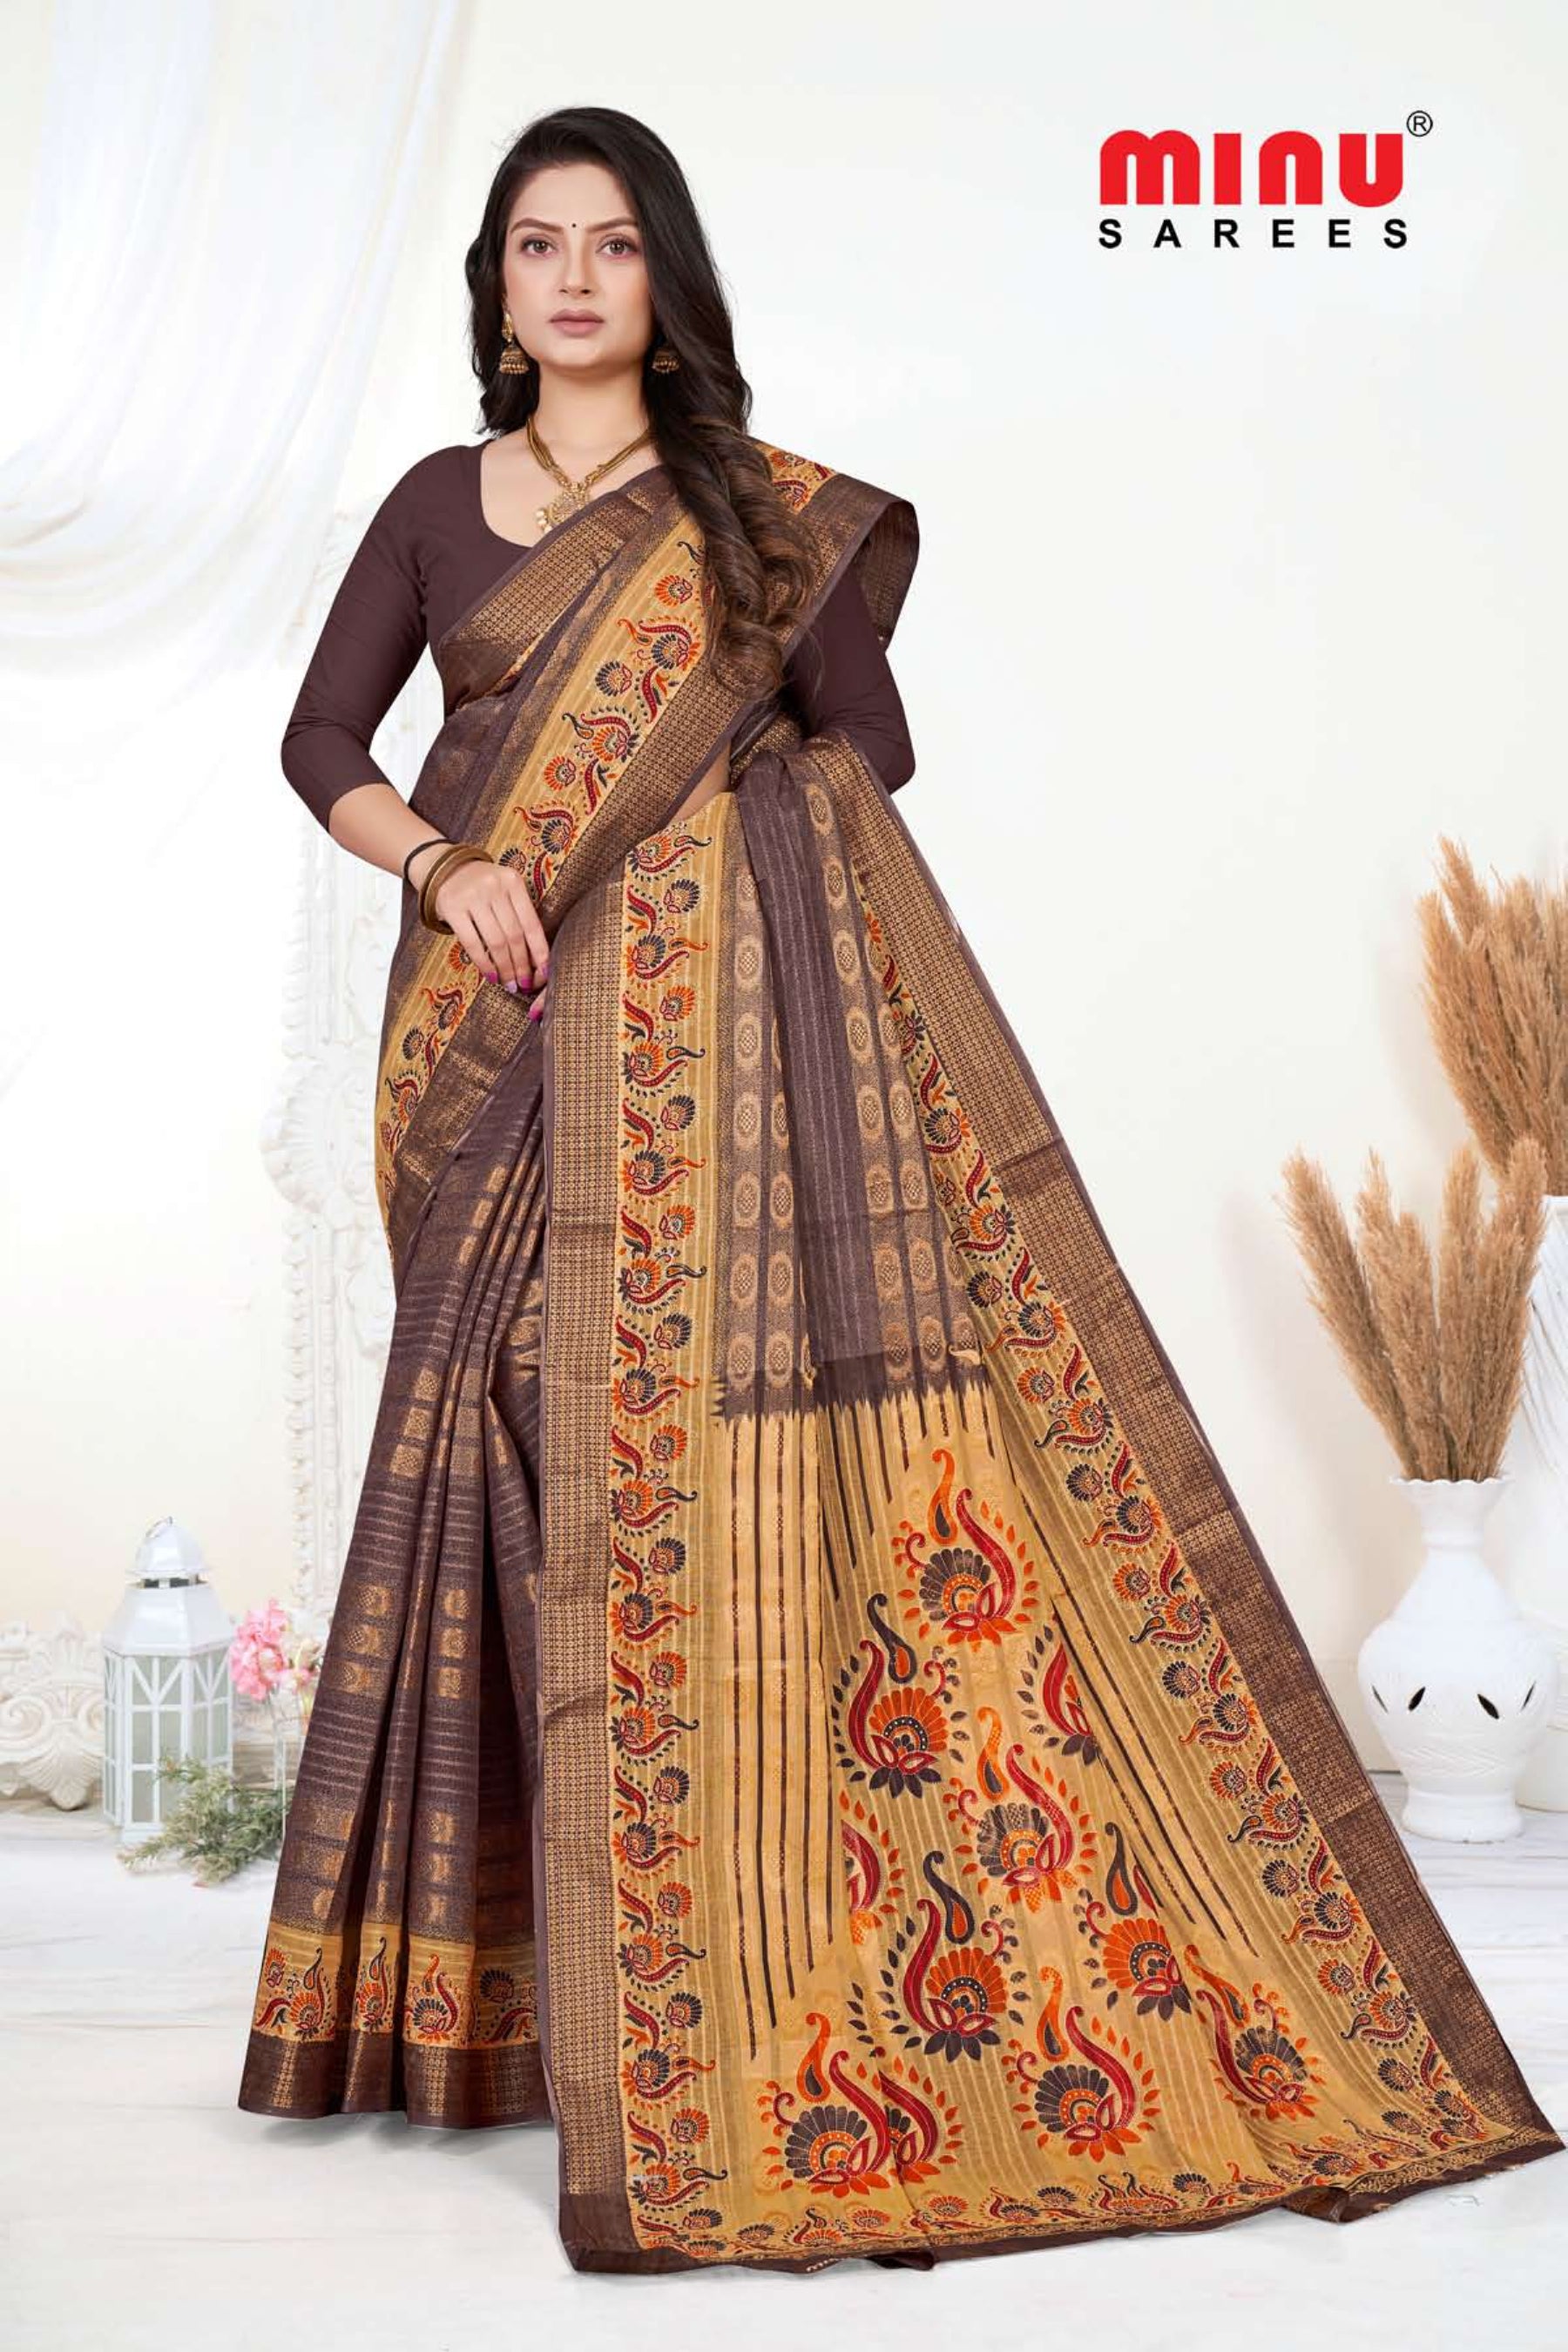 printed saree wearing woman online image